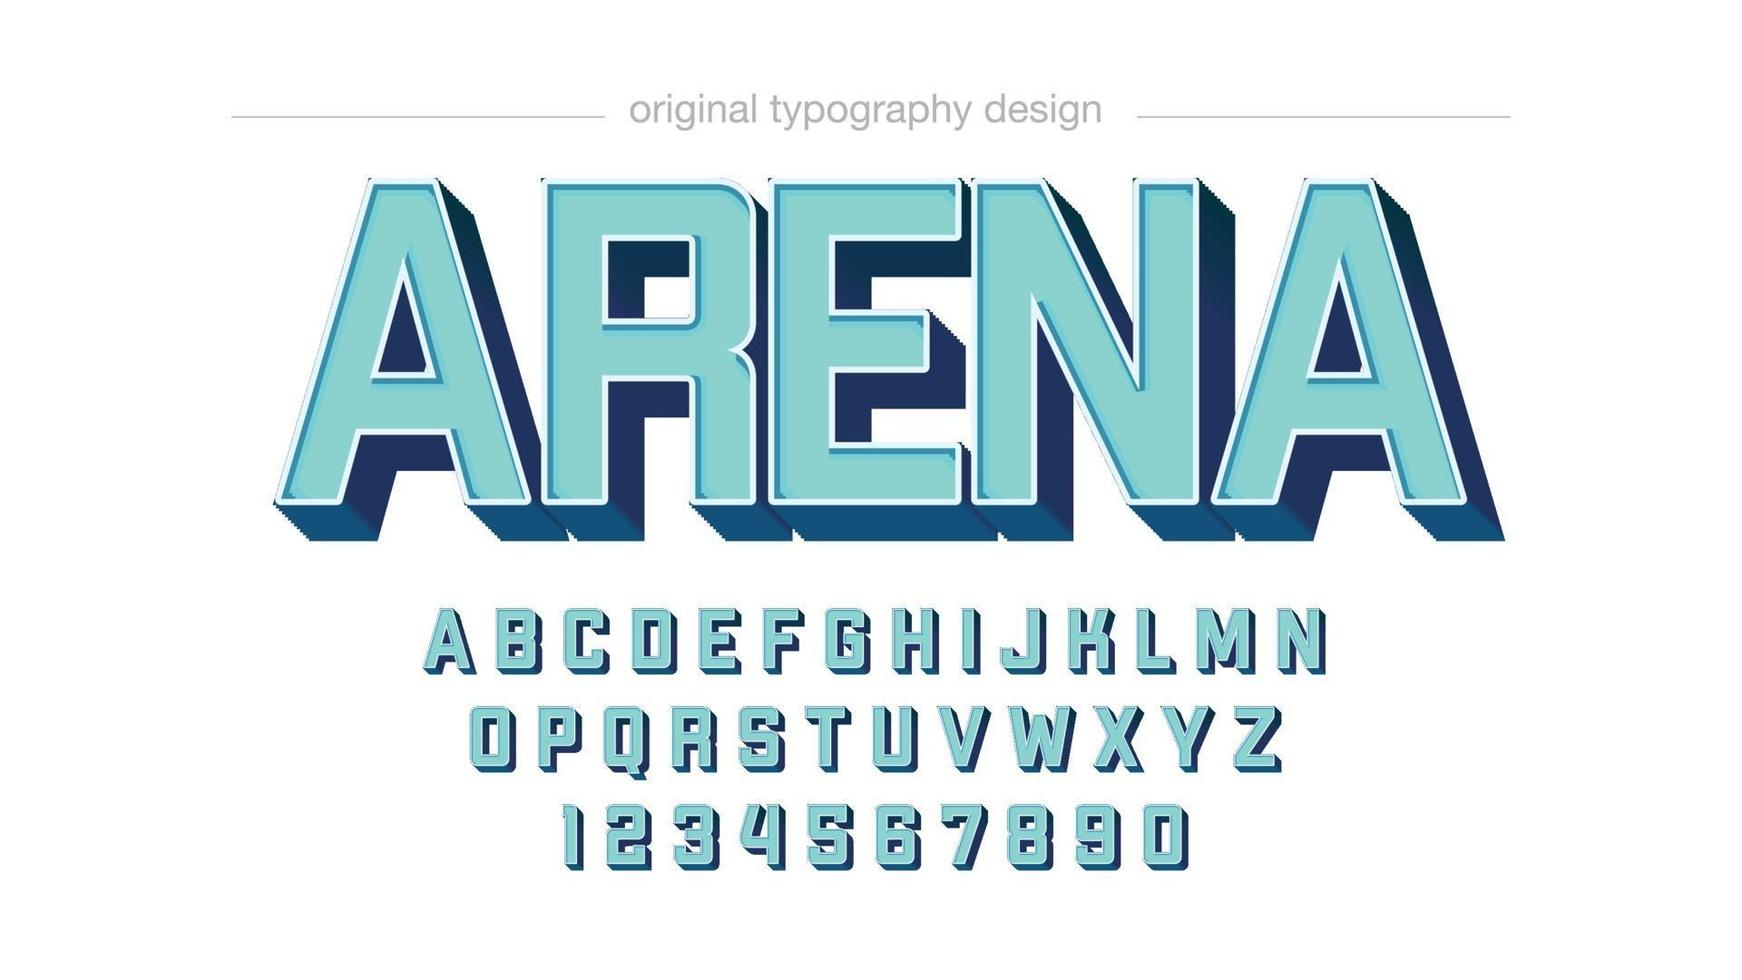 tipografía en mayúsculas 3d azul claro vector